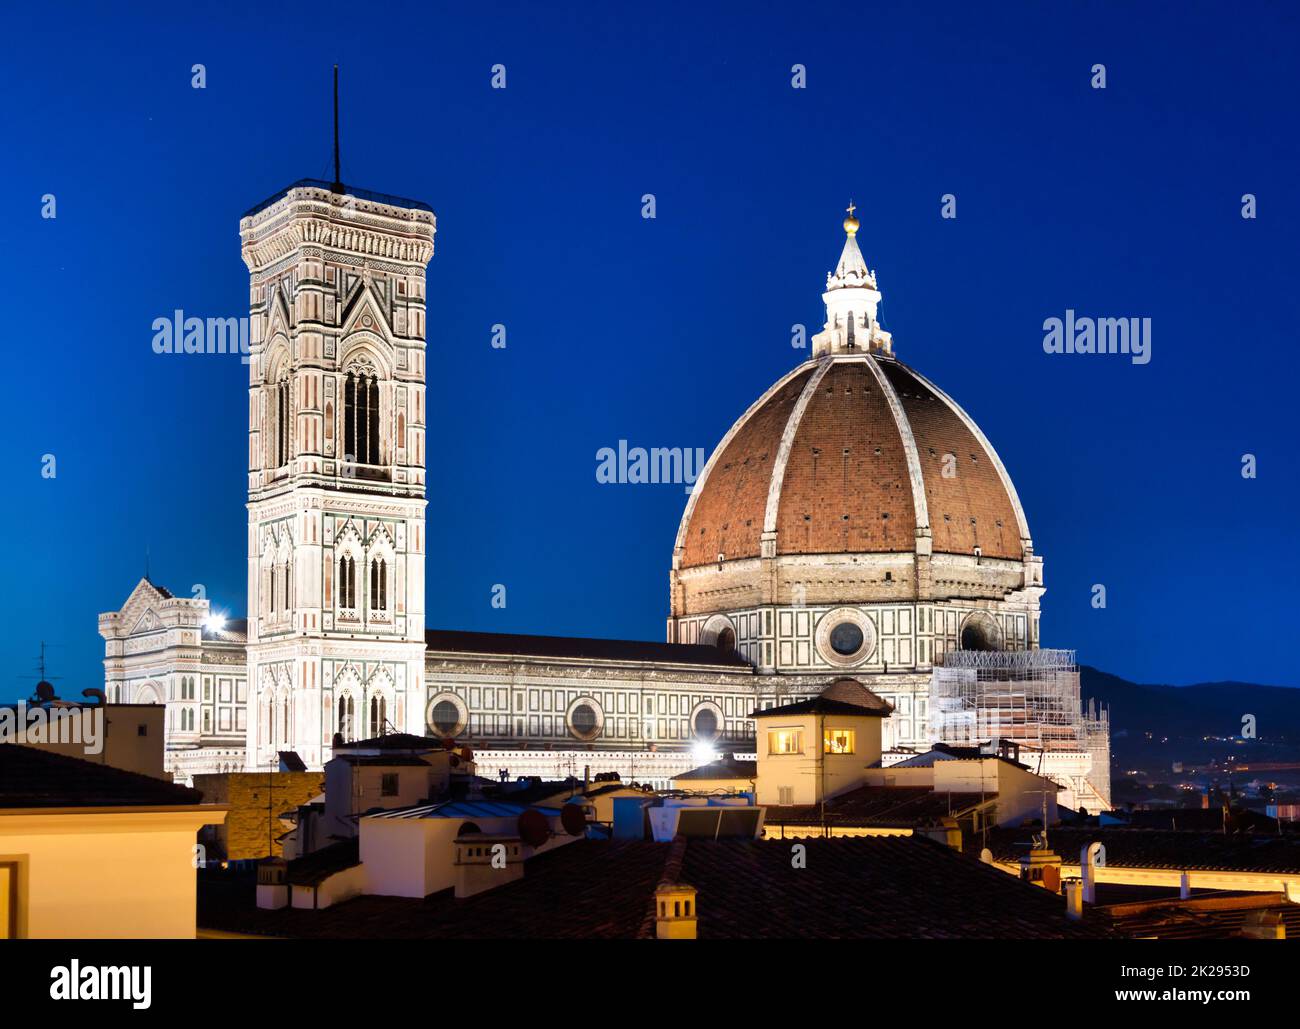 Duomo et Campanile de Florence - Tour du clocher - architecture illuminée par la nuit, Italie. Scène urbaine à l'extérieur - personne. Banque D'Images